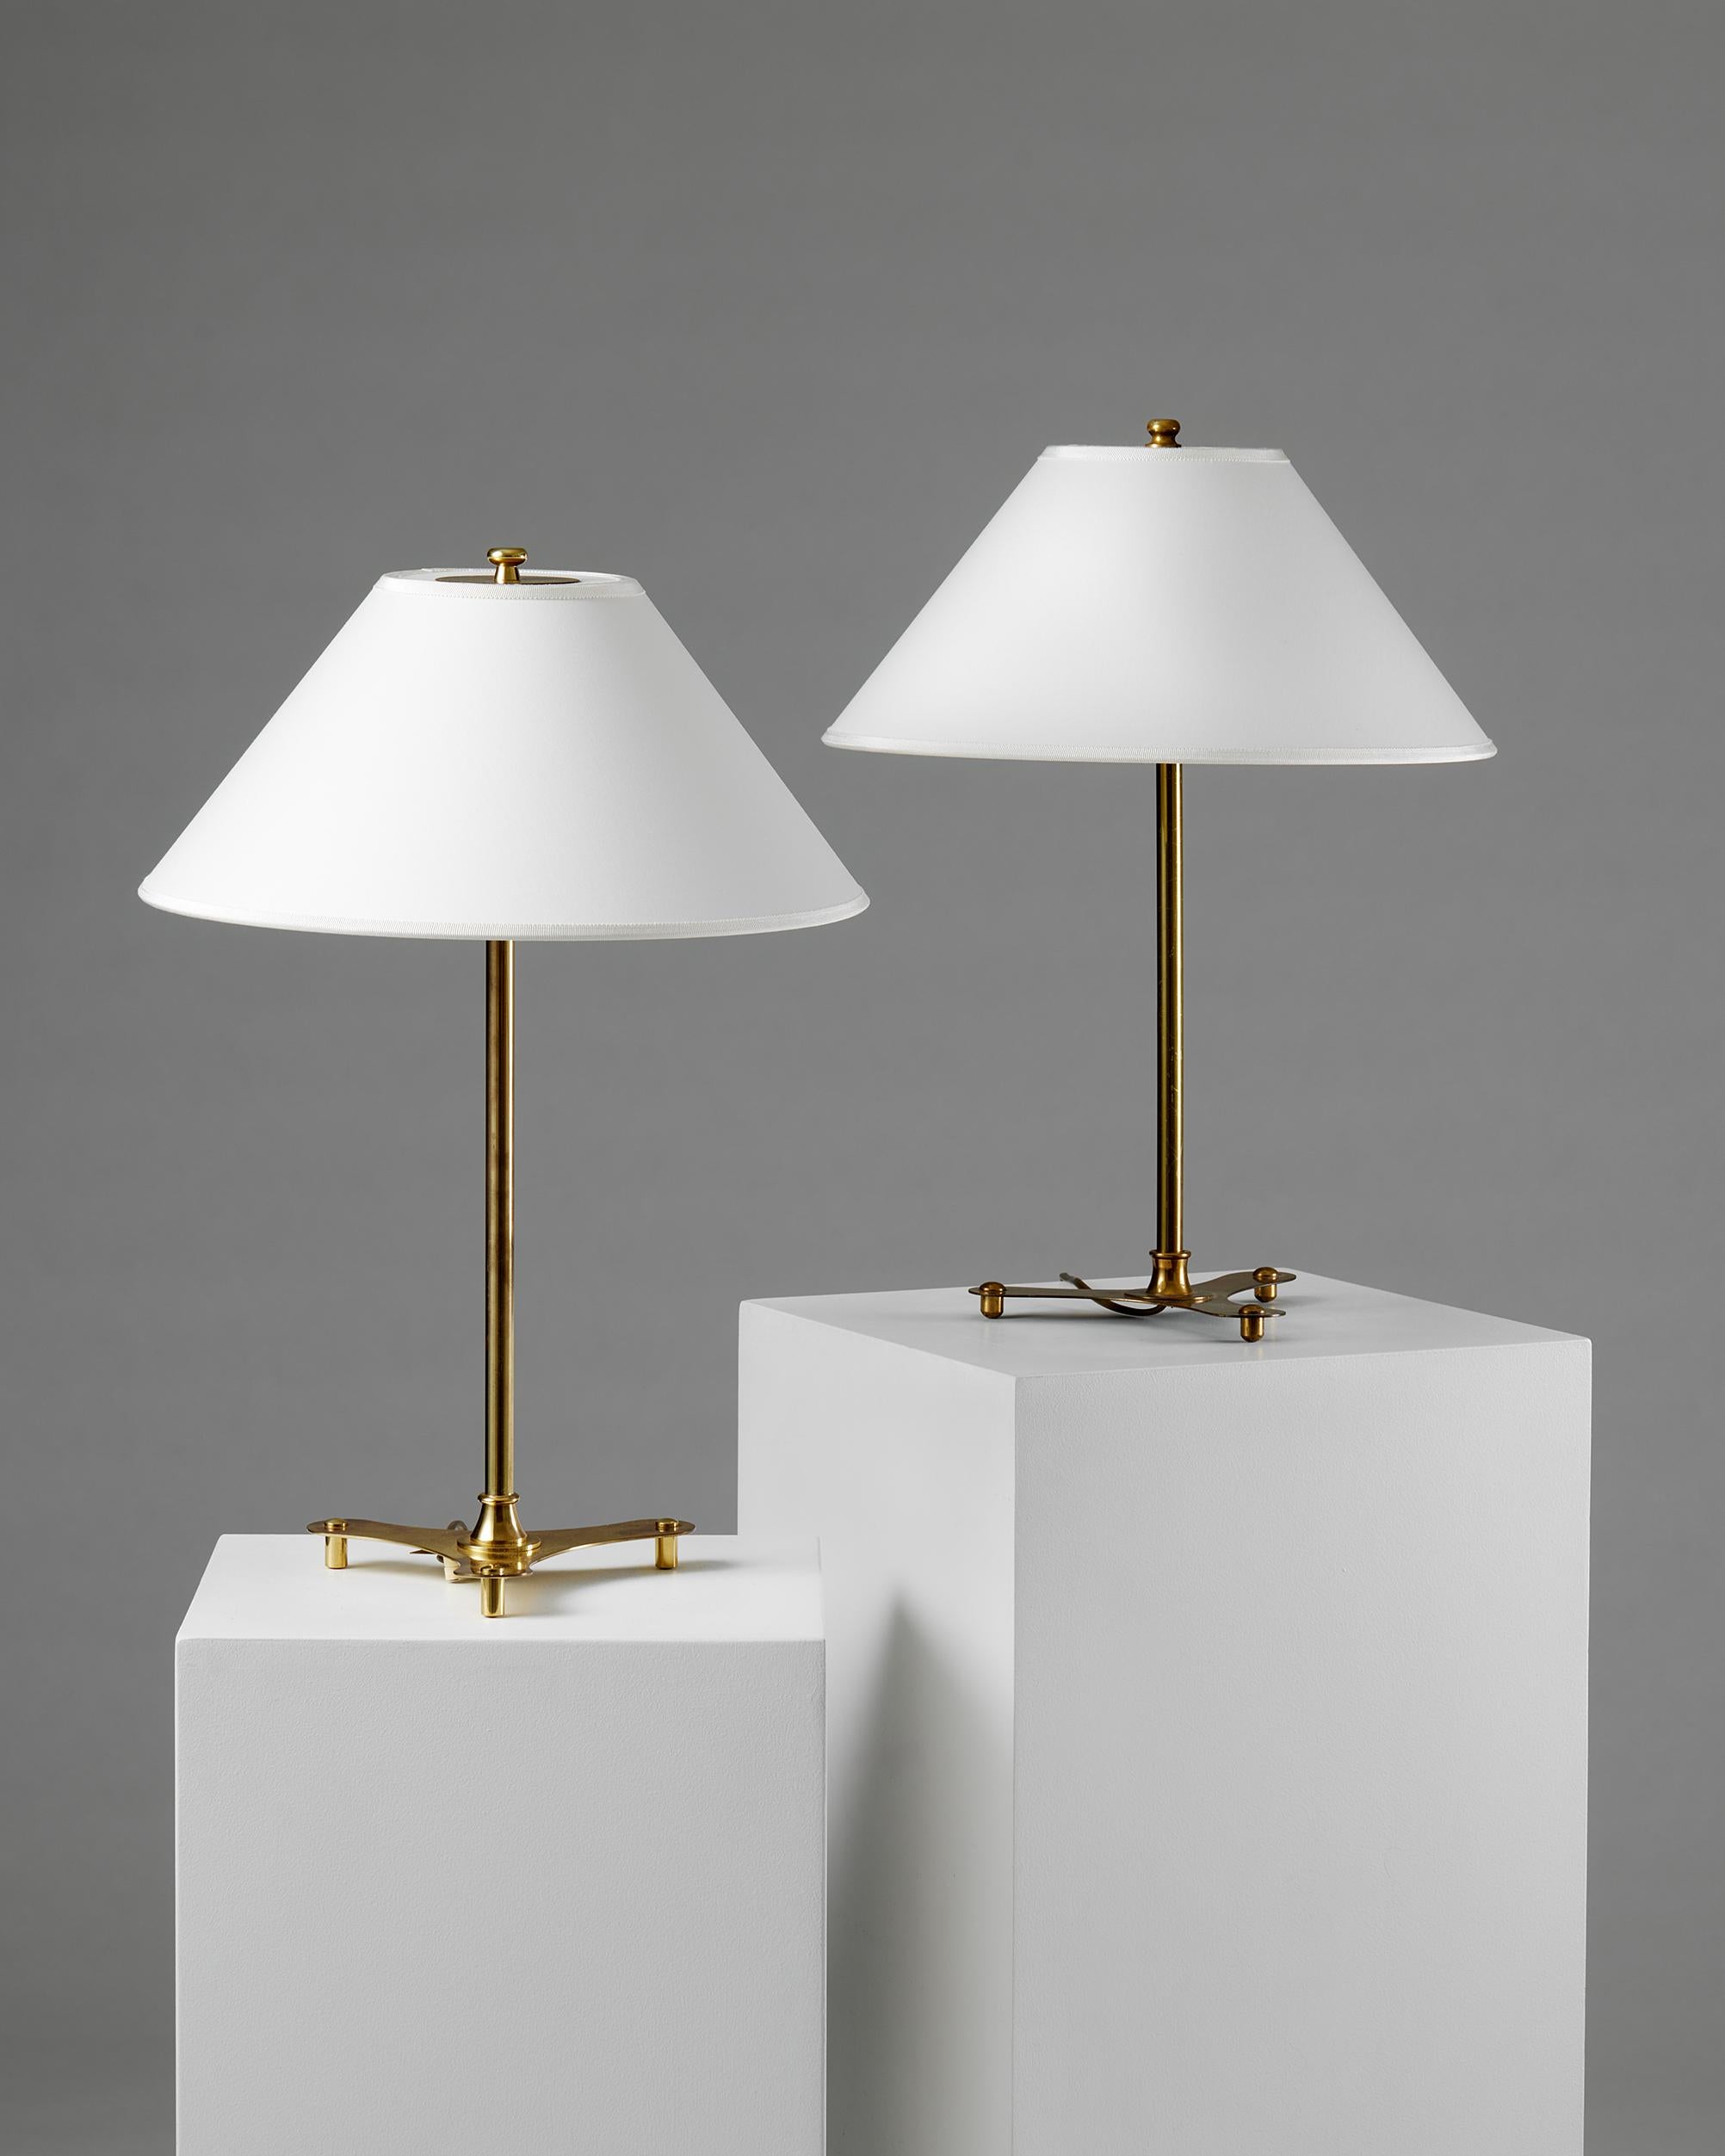 Mid-Century Modern Paire de lampes de table modèle 2552 conçues par Josef Frank pour Svenskt Tenn, années 1950